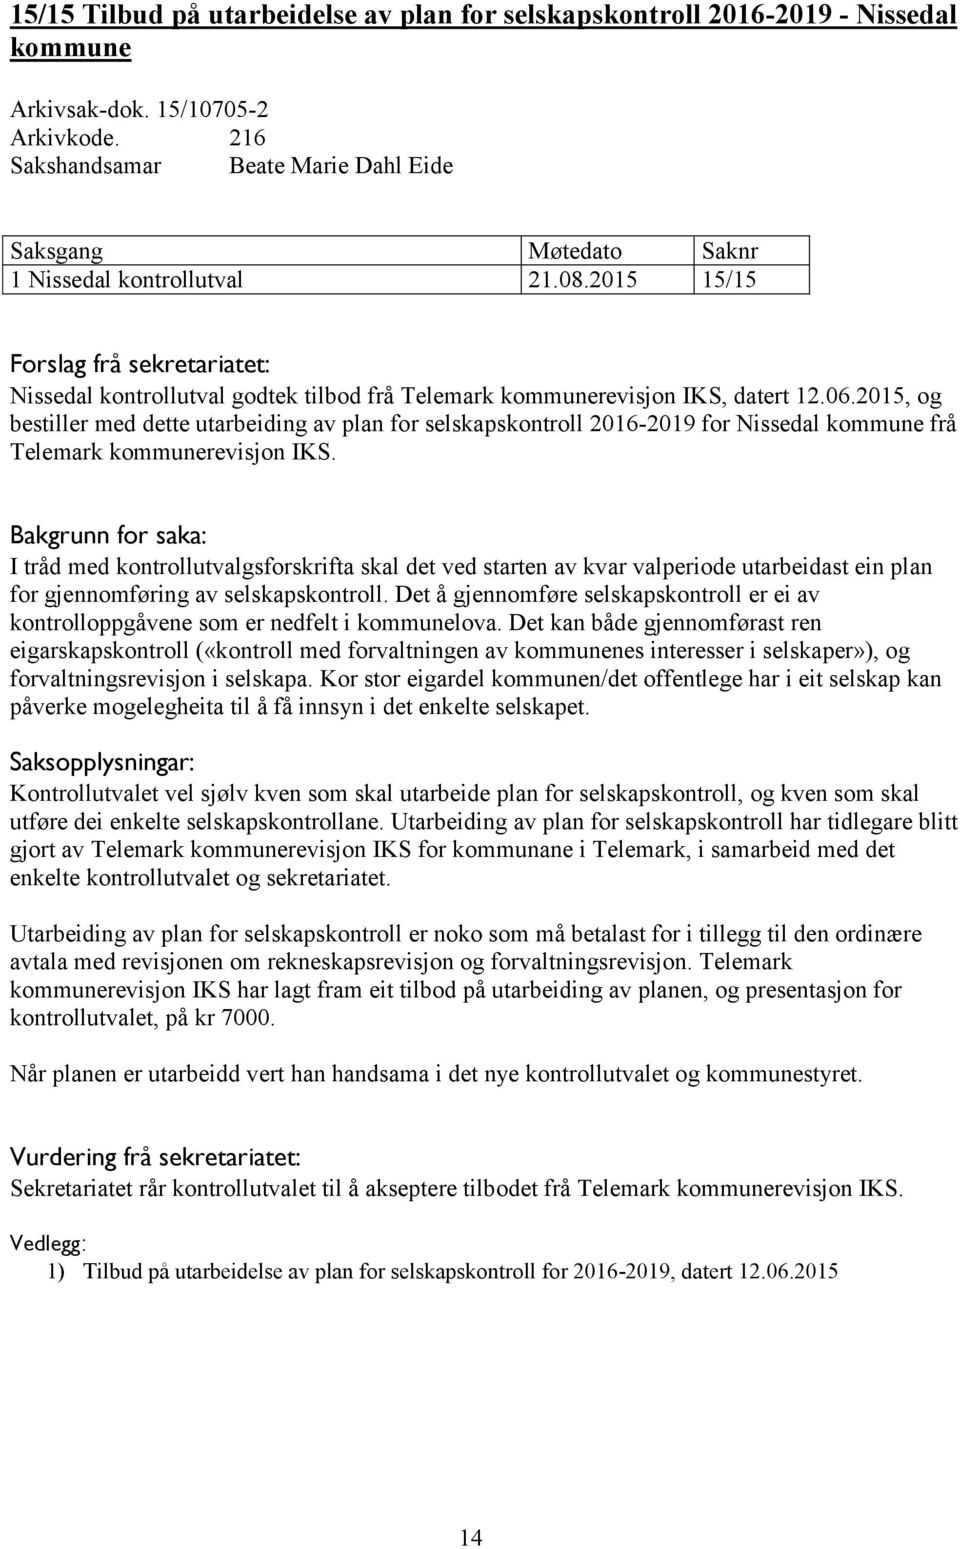 2015, og bestiller med dette utarbeiding av plan for selskapskontroll 2016-2019 for Nissedal kommune frå Telemark kommunerevisjon IKS.